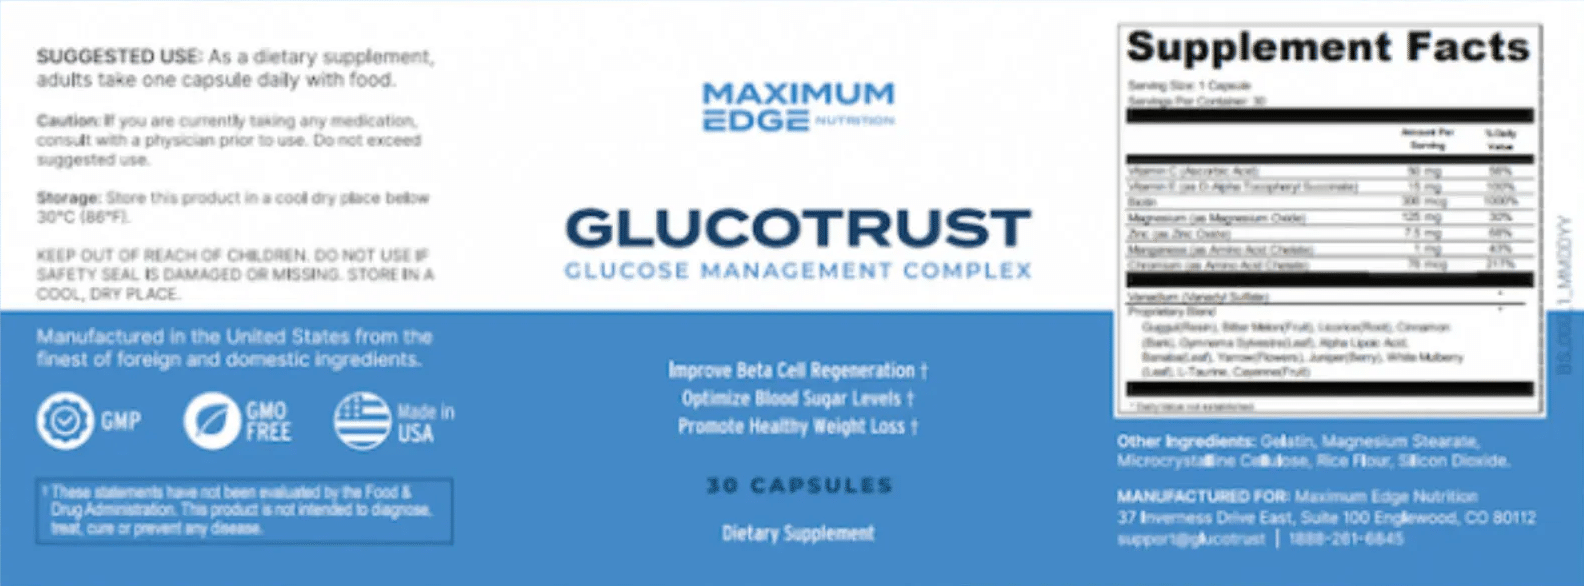 Glucotrust Label